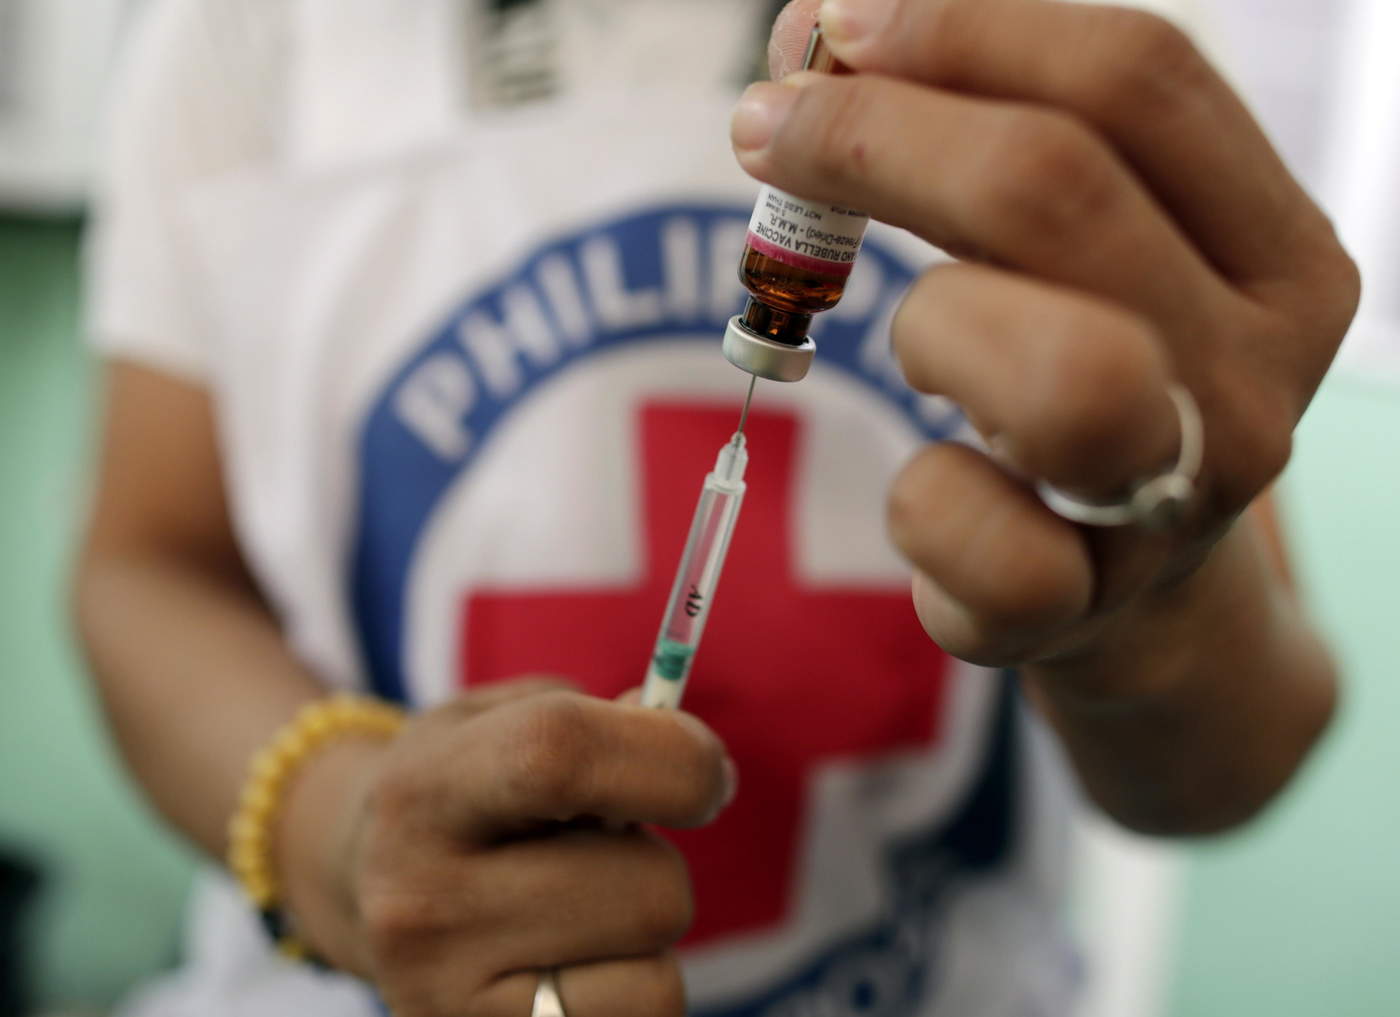 Epidemia de sarampión en Filipinas alcanza 11,450 casos; reportan 189 muertes